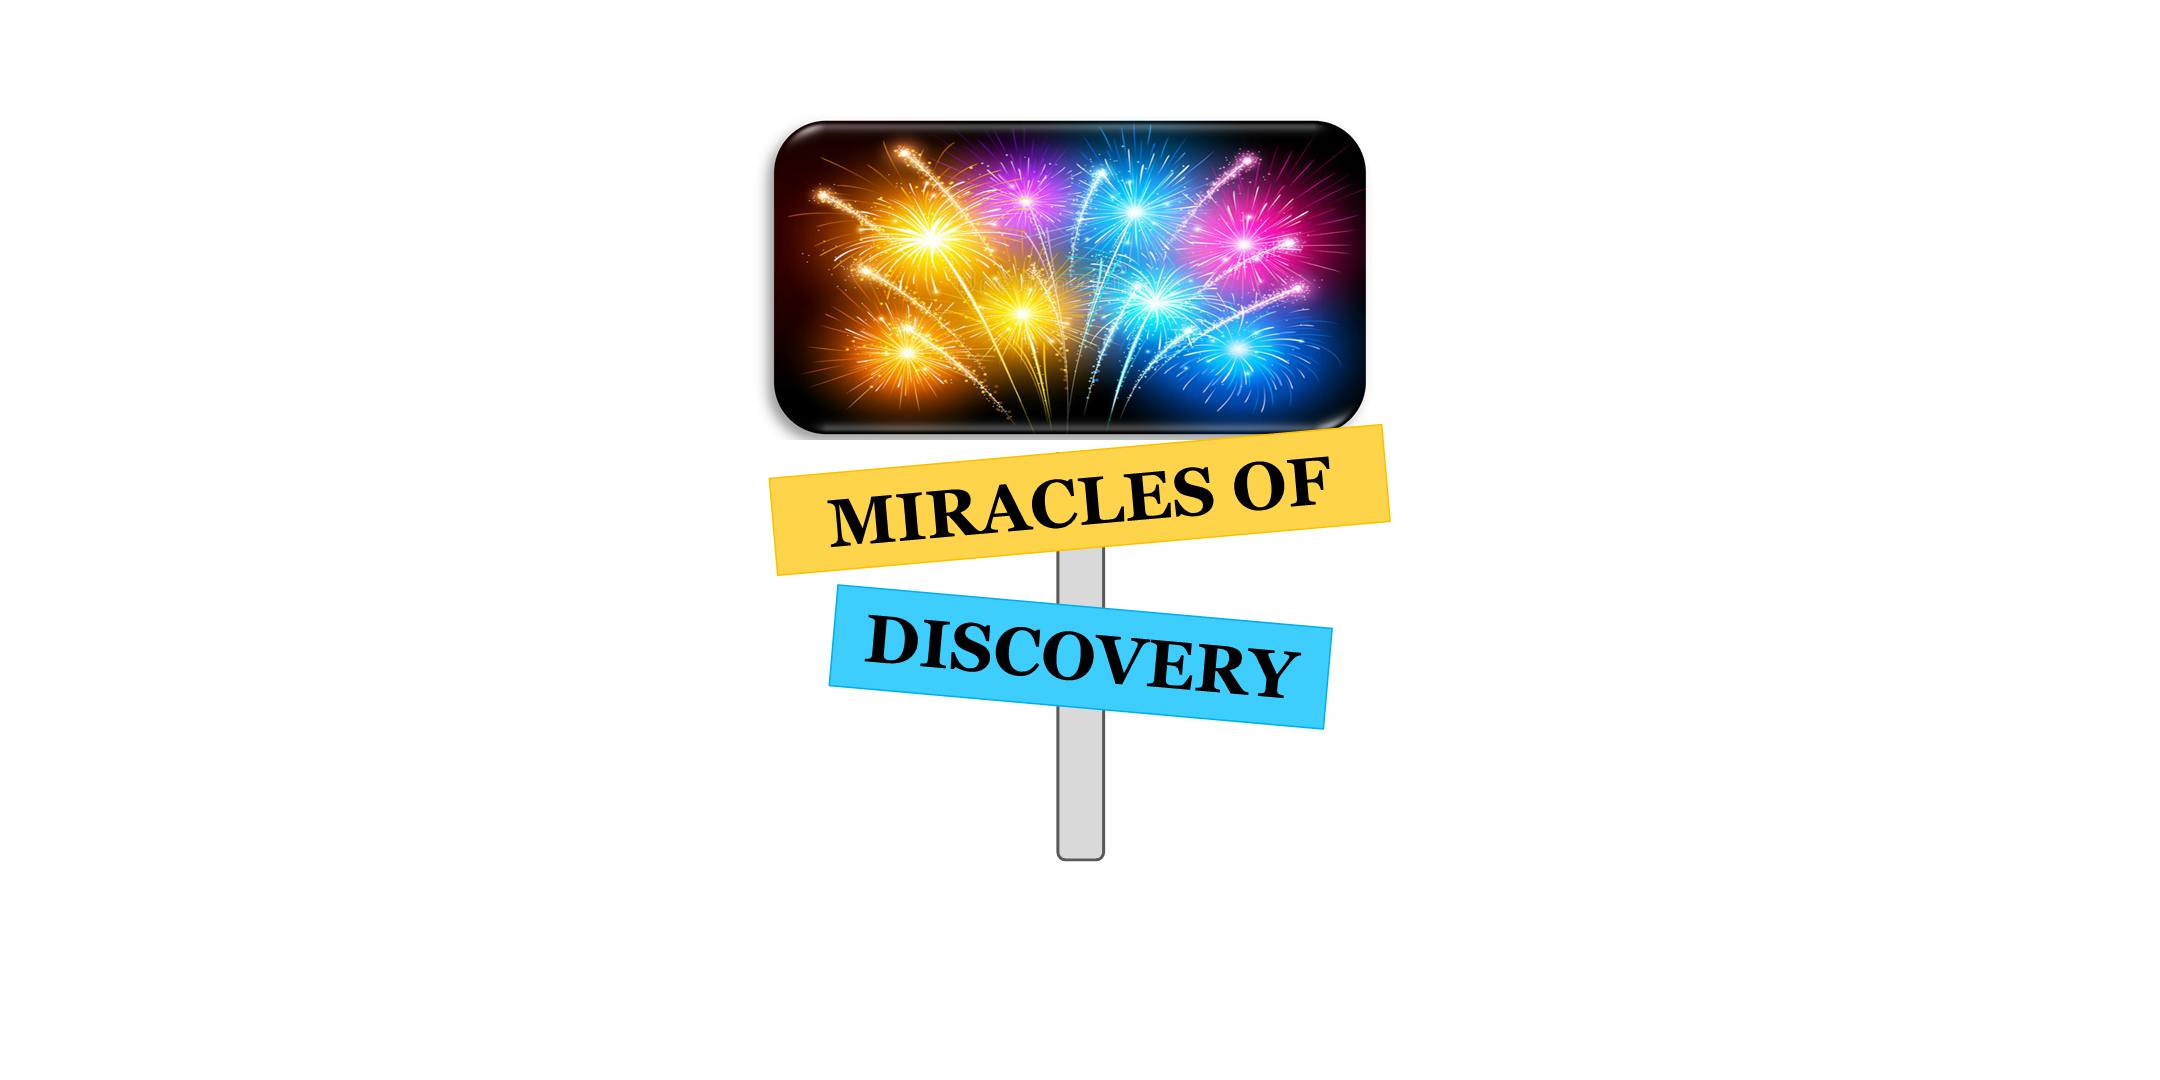 Convención Al-Anon Descubrimiento 2019: Milagros de Descubrimiento